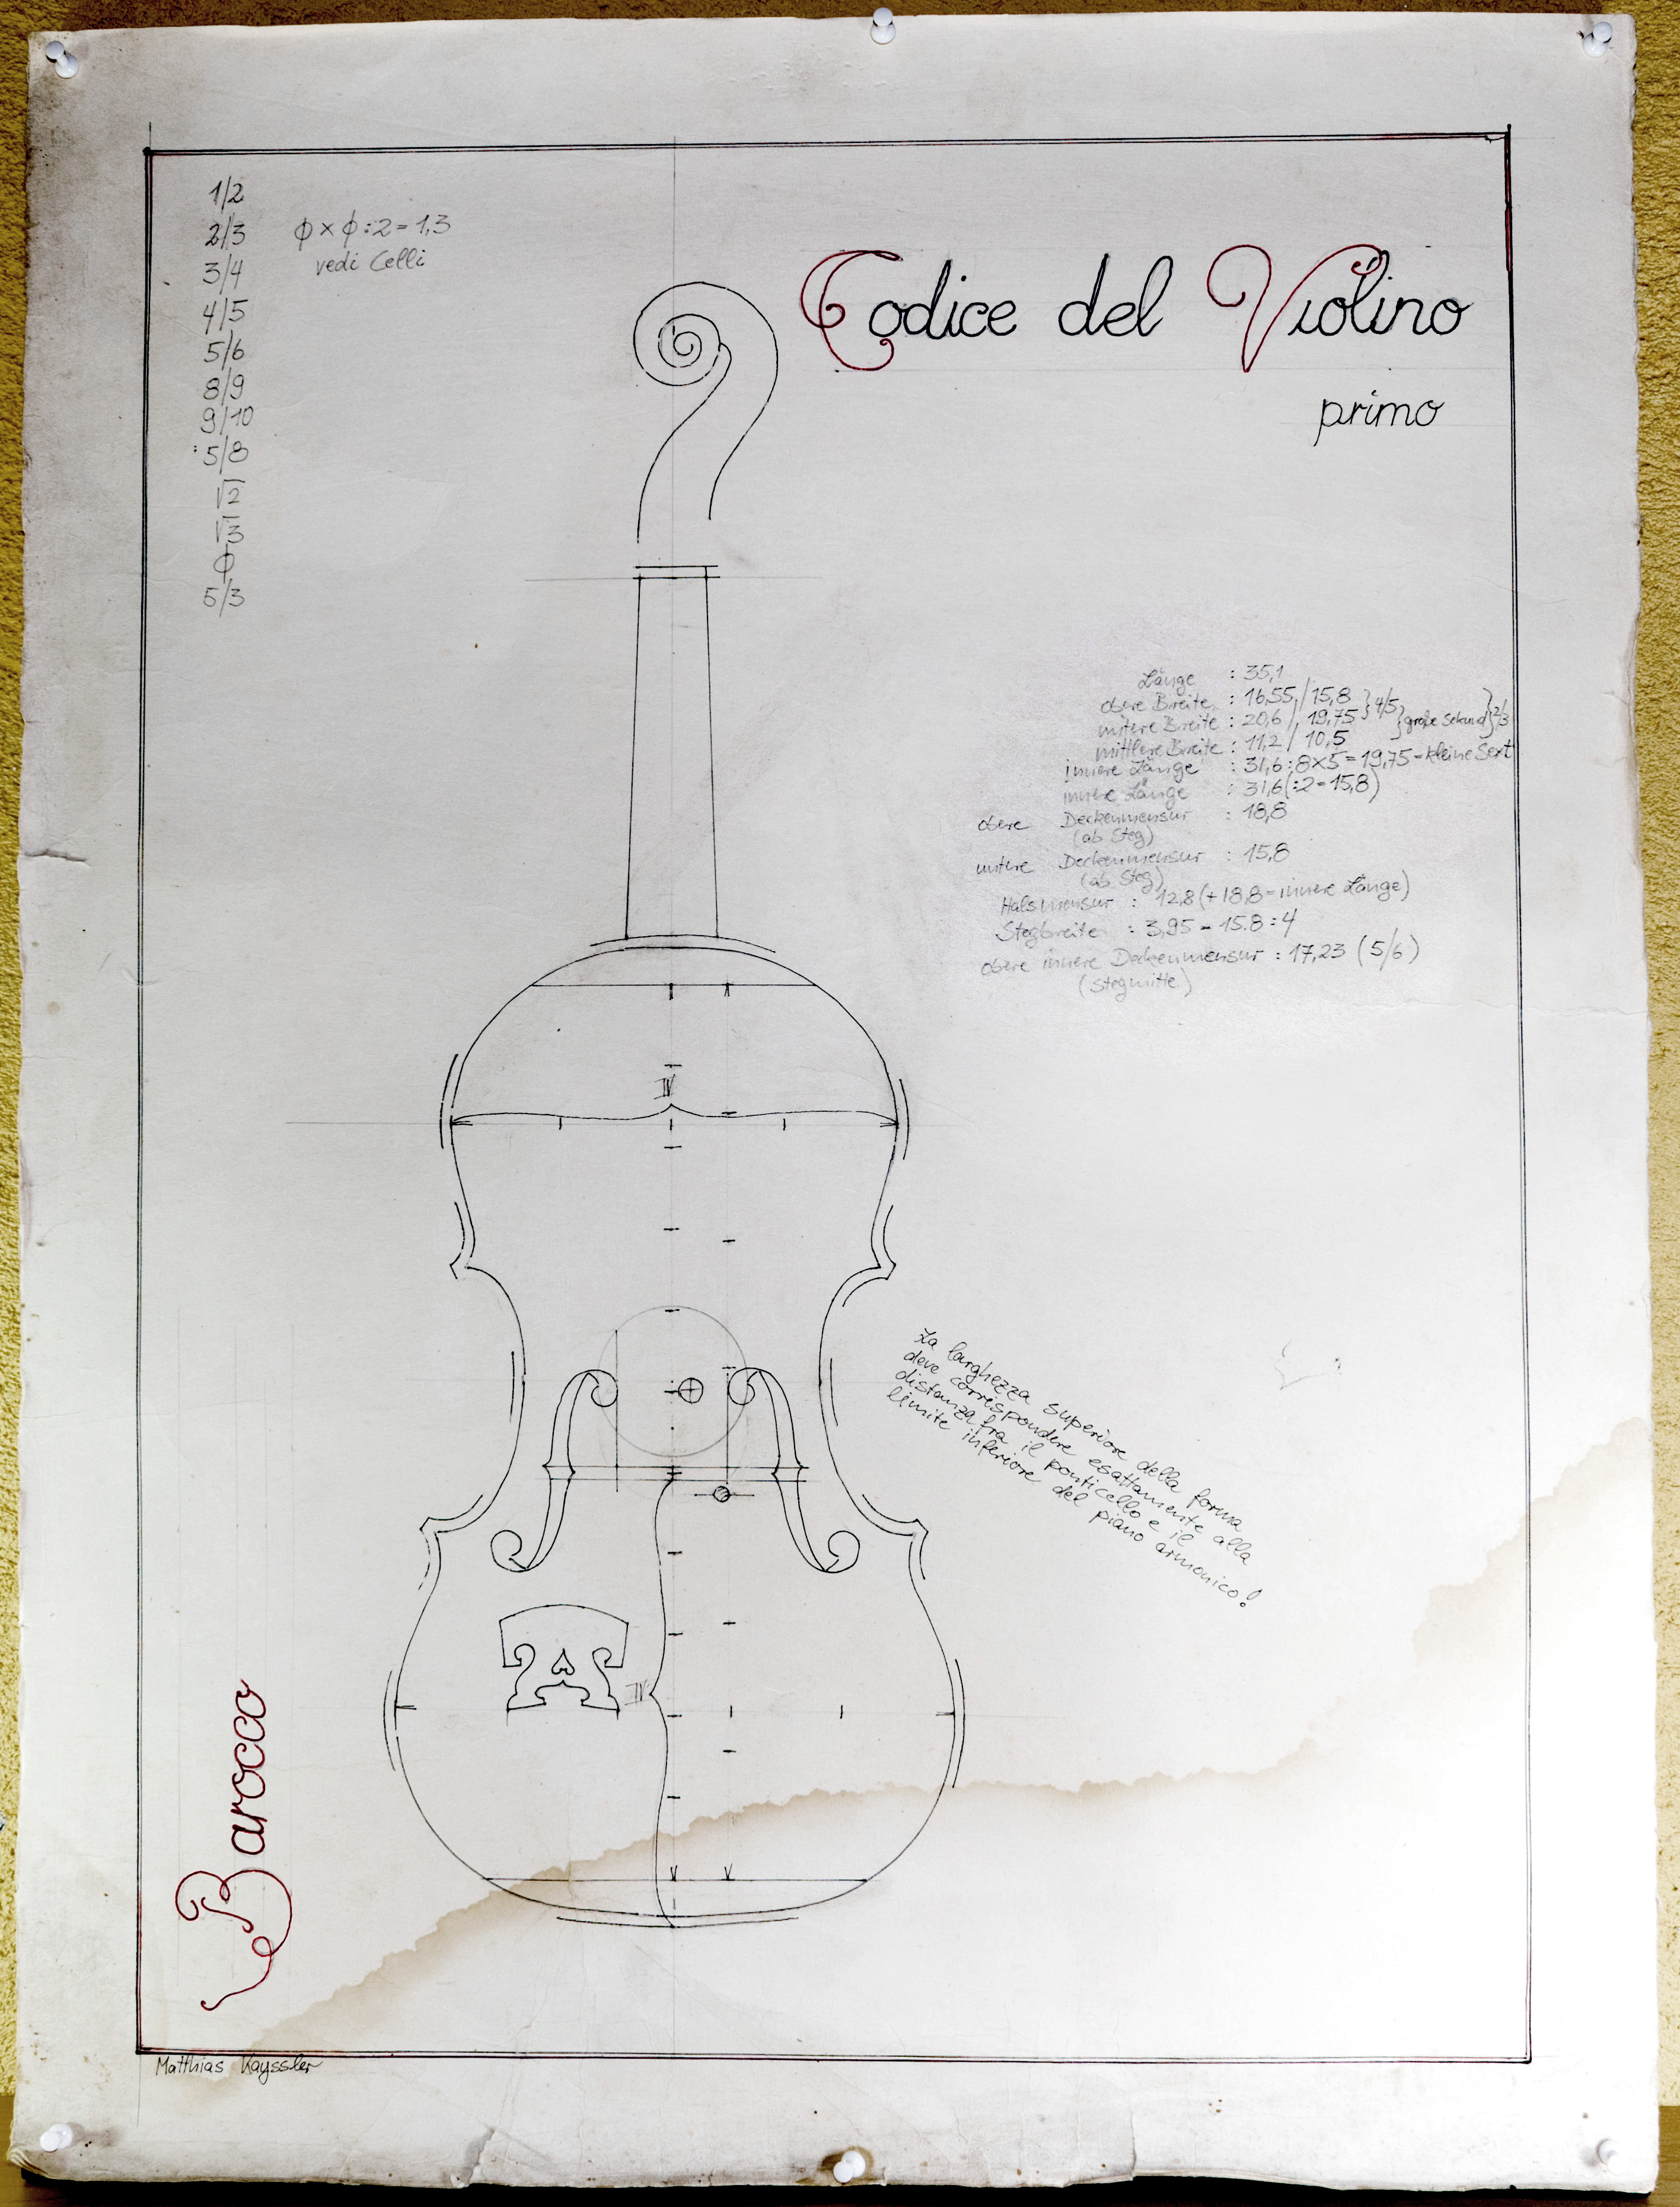 codice del violino